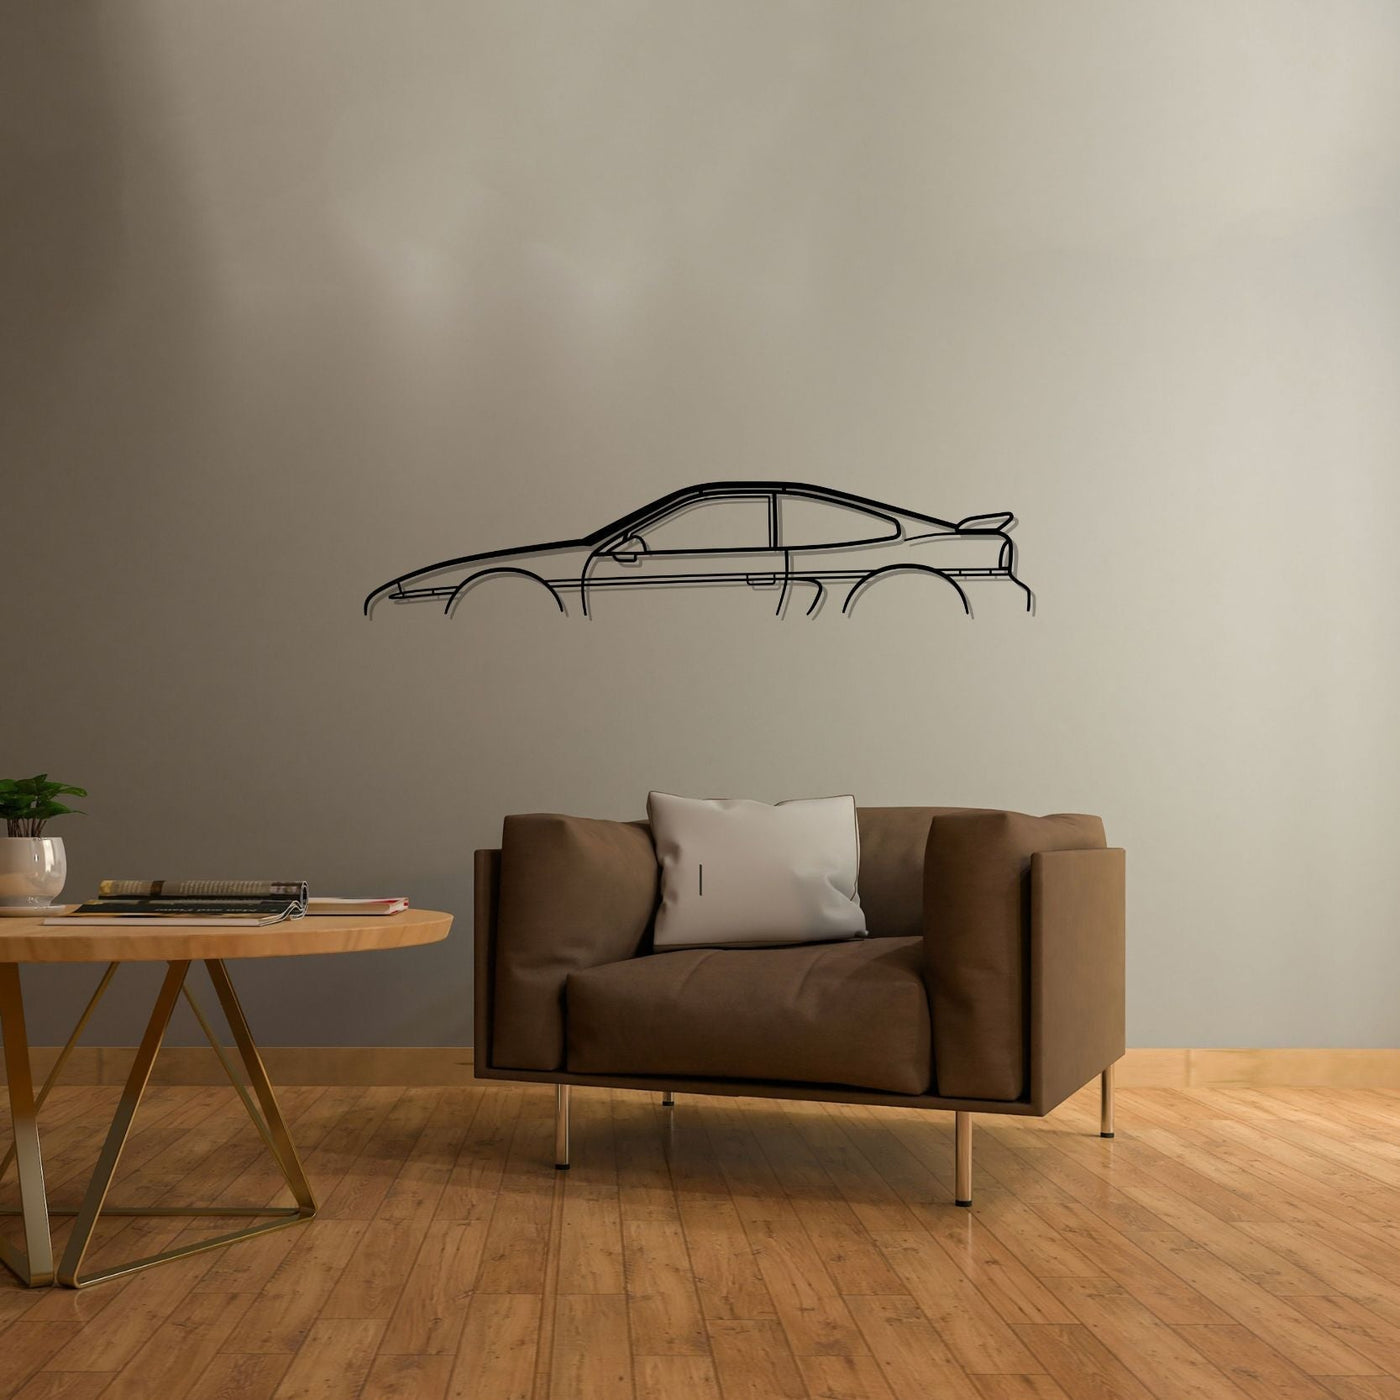 Fiero GT Classic Silhouette Metal Wall Art